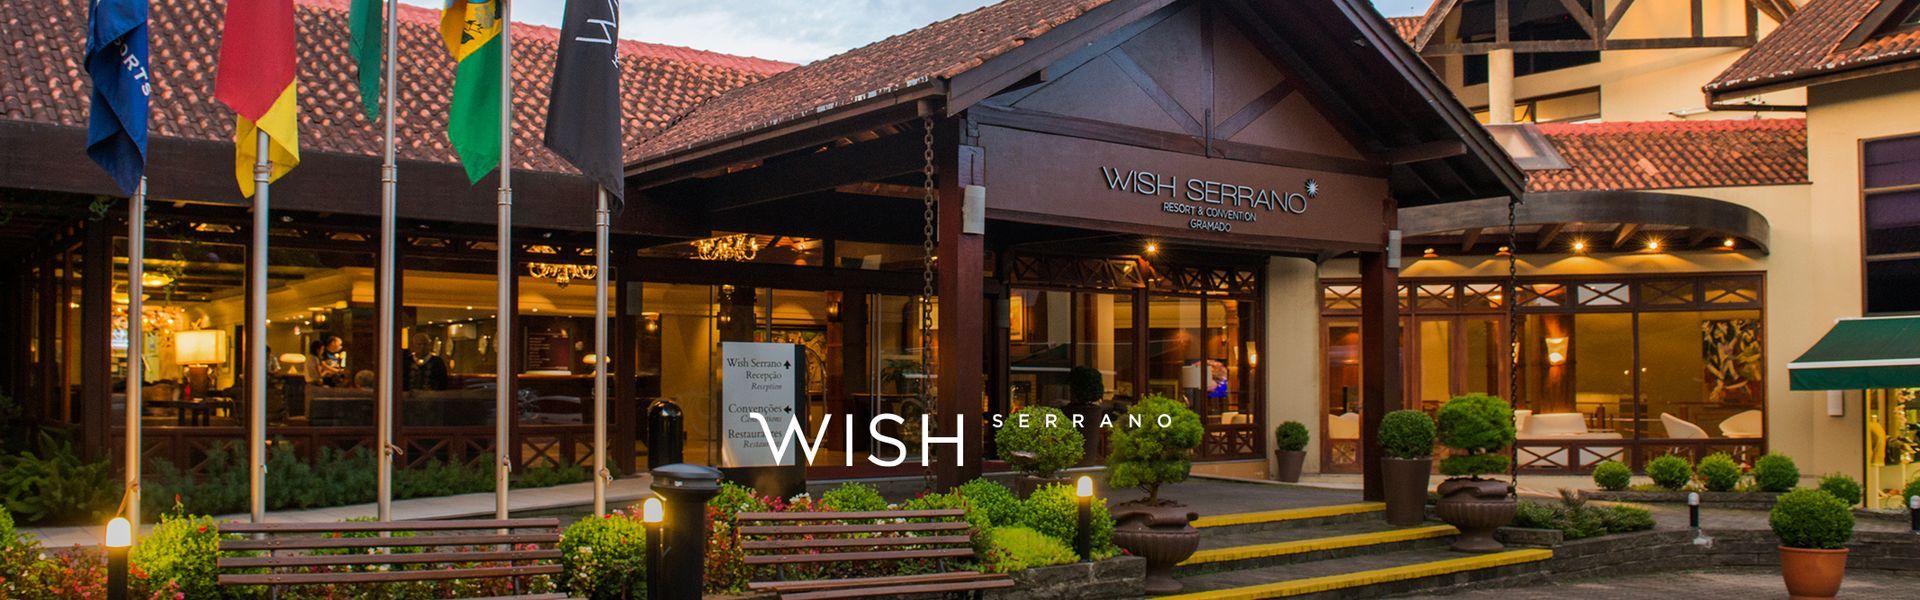 Wish Serrano Resort